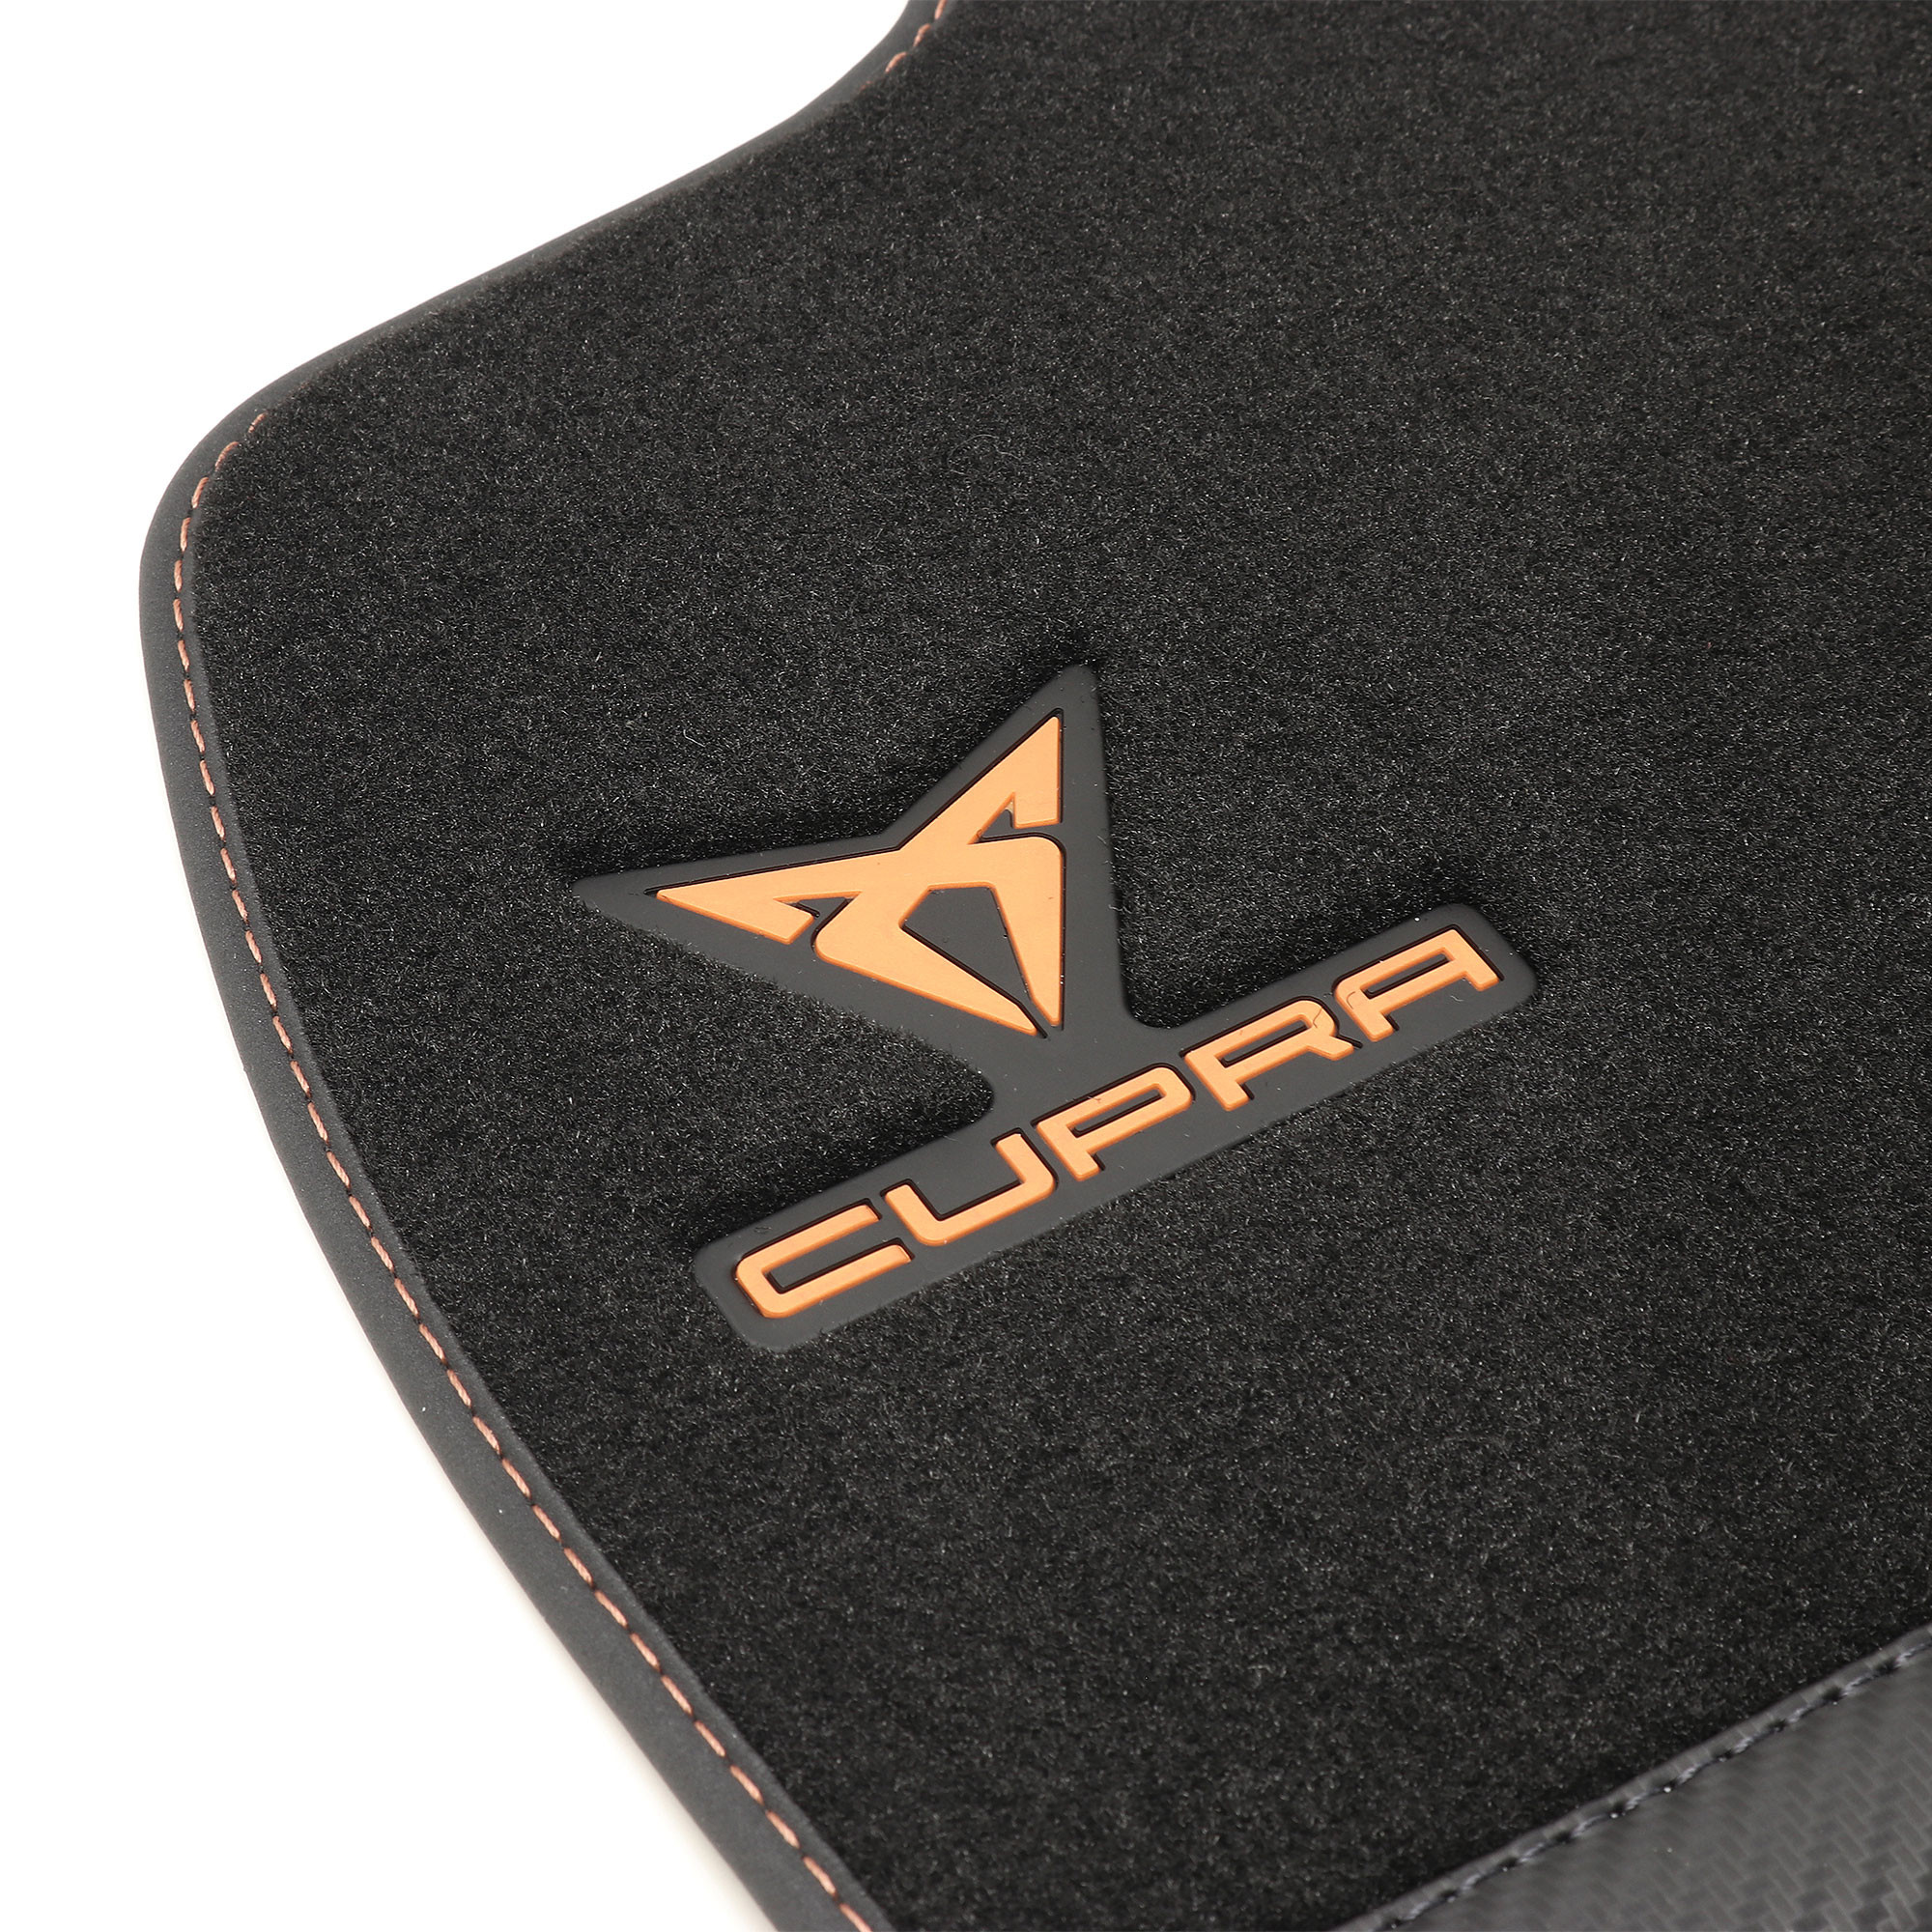 Fußmatten passend für Cupra Born Electric kaufen?